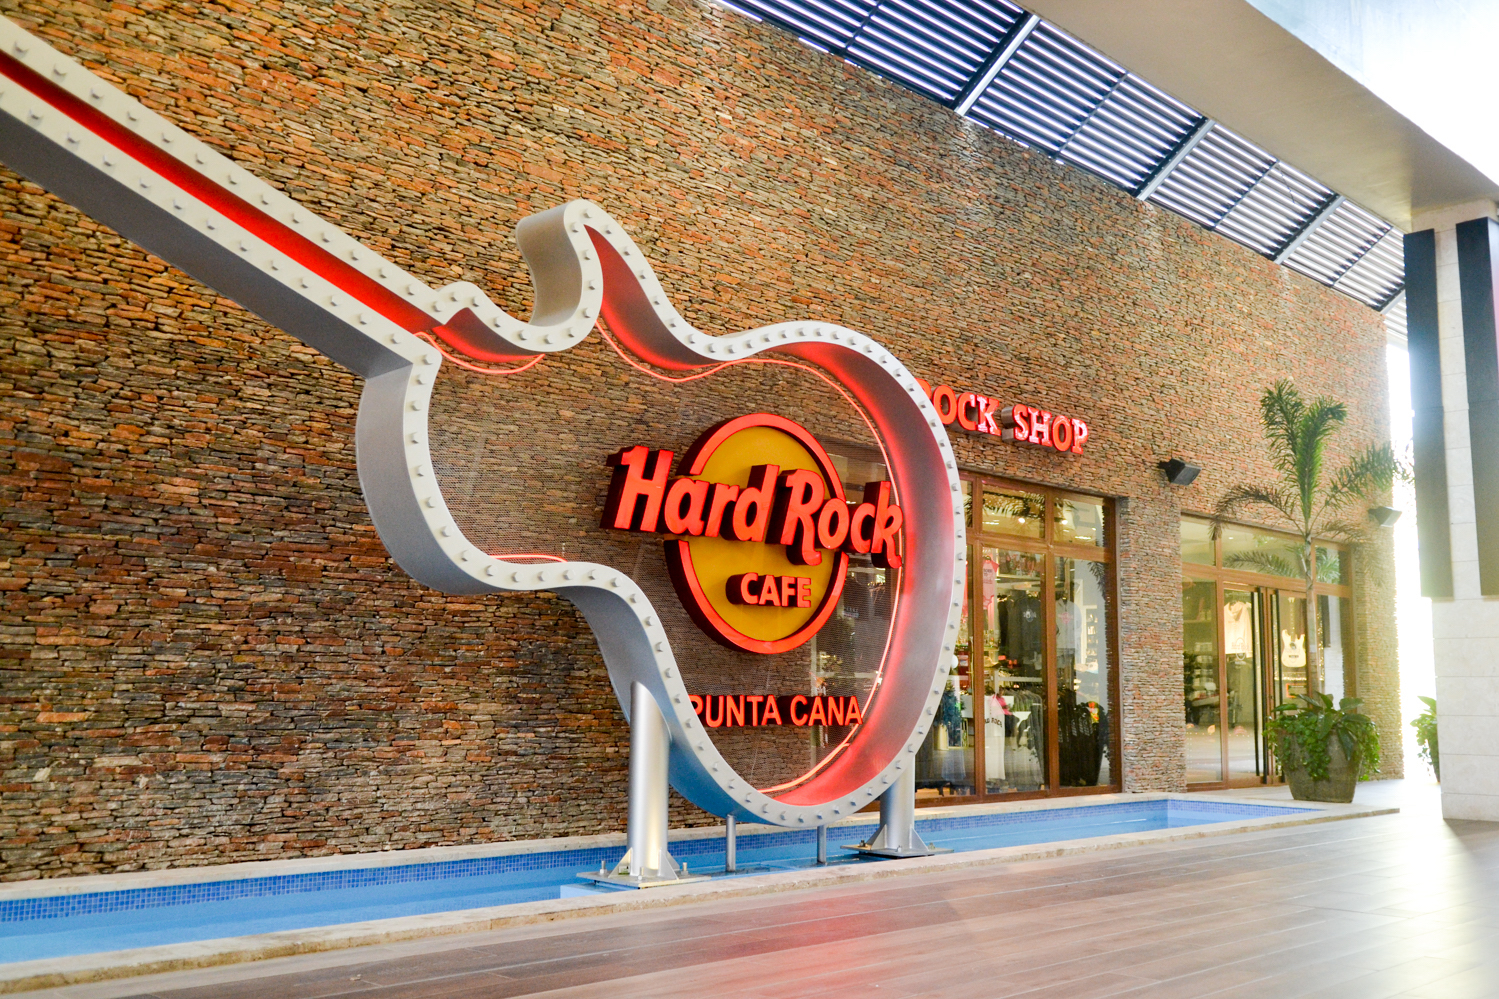  Hard  Rock  Caf  abre nueva sucursal en Punta Cana 